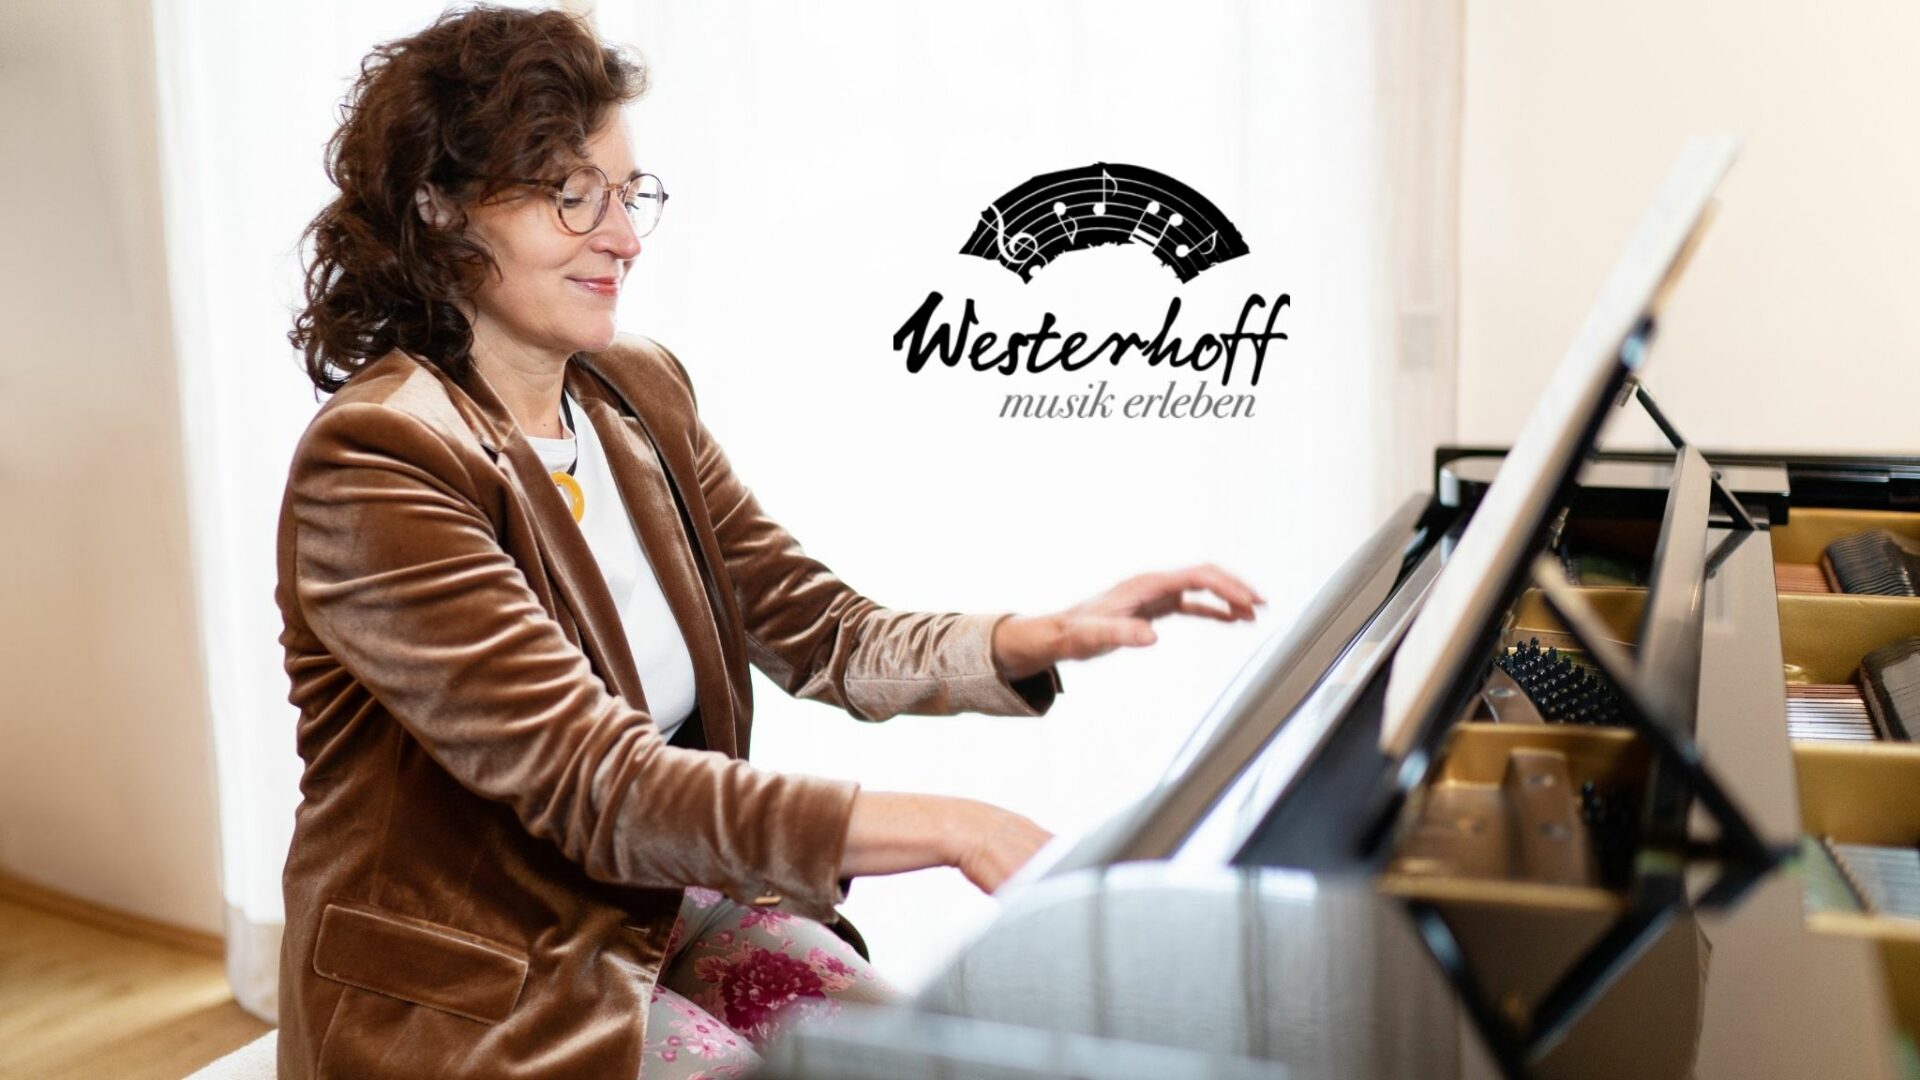 Klavierlehrer Susanne Westerhoff spielt Klavier